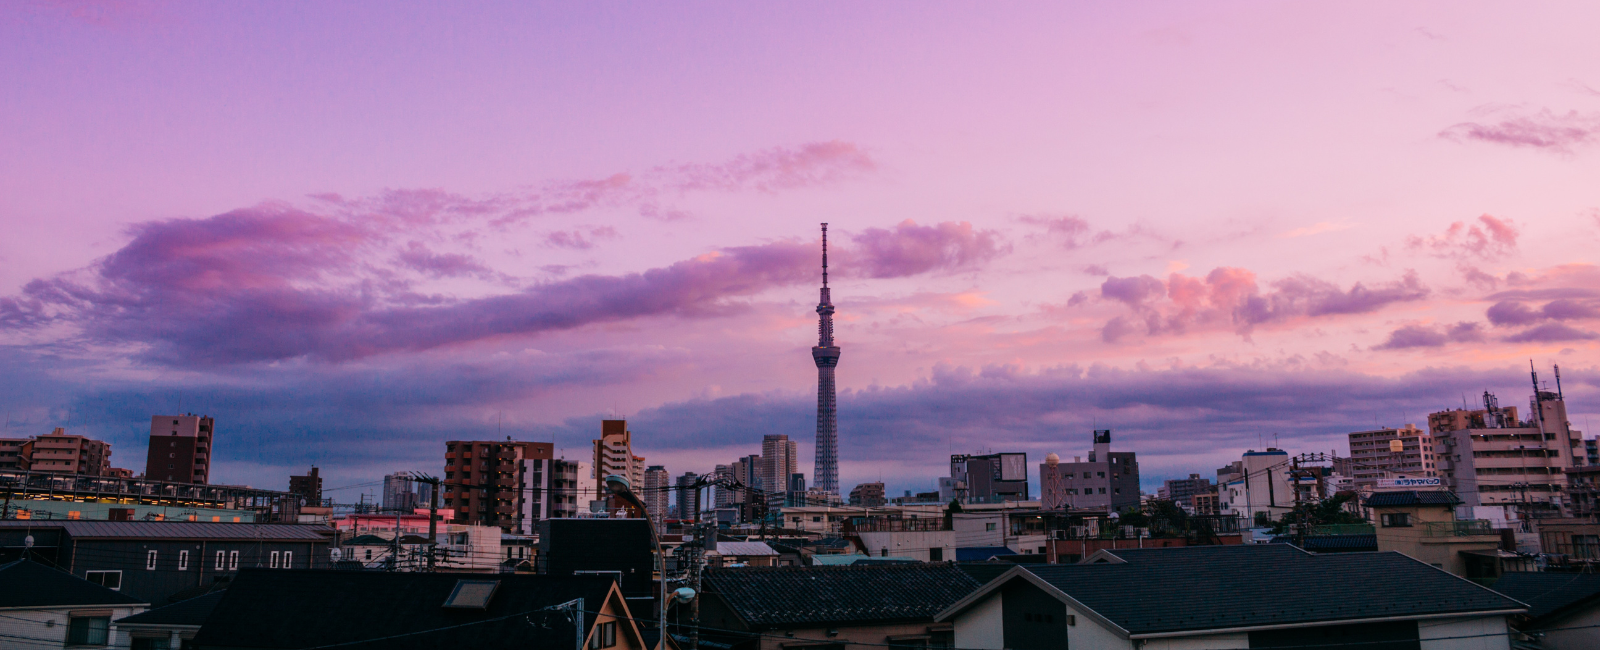 Skyline of Tokyo Skytree